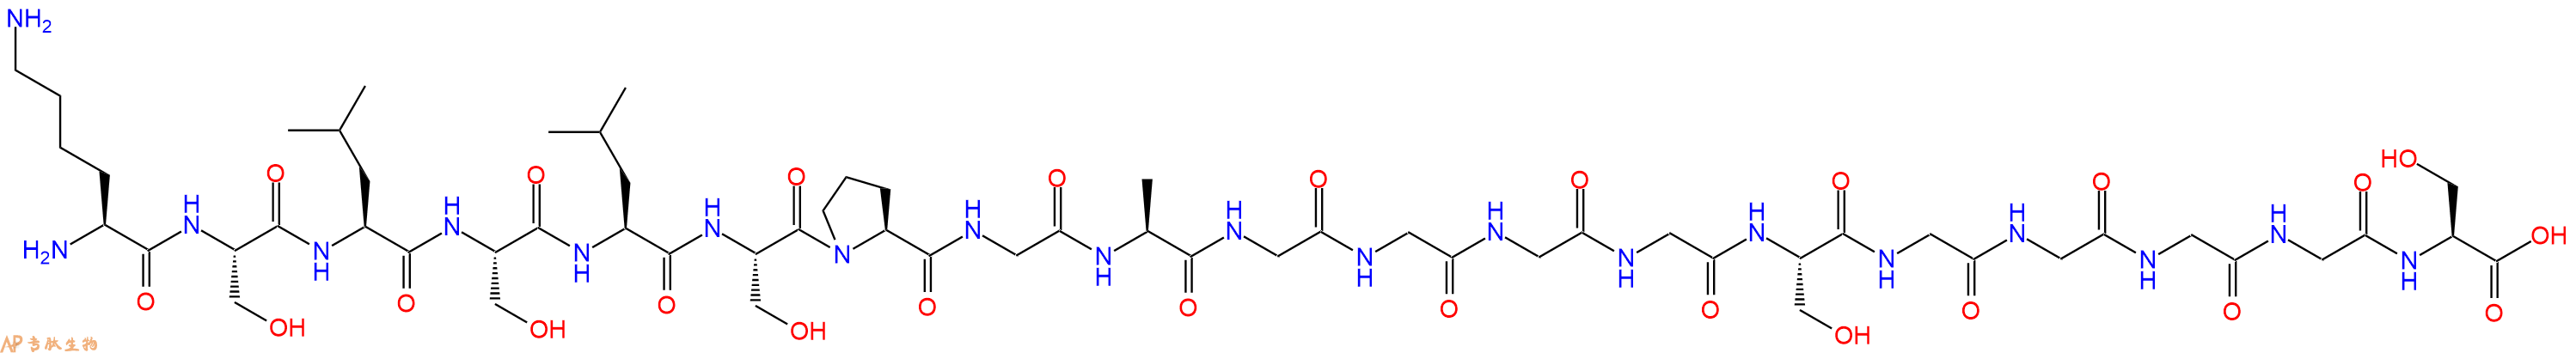 专肽生物产品H2N-Lys-Ser-Leu-Ser-Leu-Ser-Pro-Gly-Ala-Gly-Gly-Gl